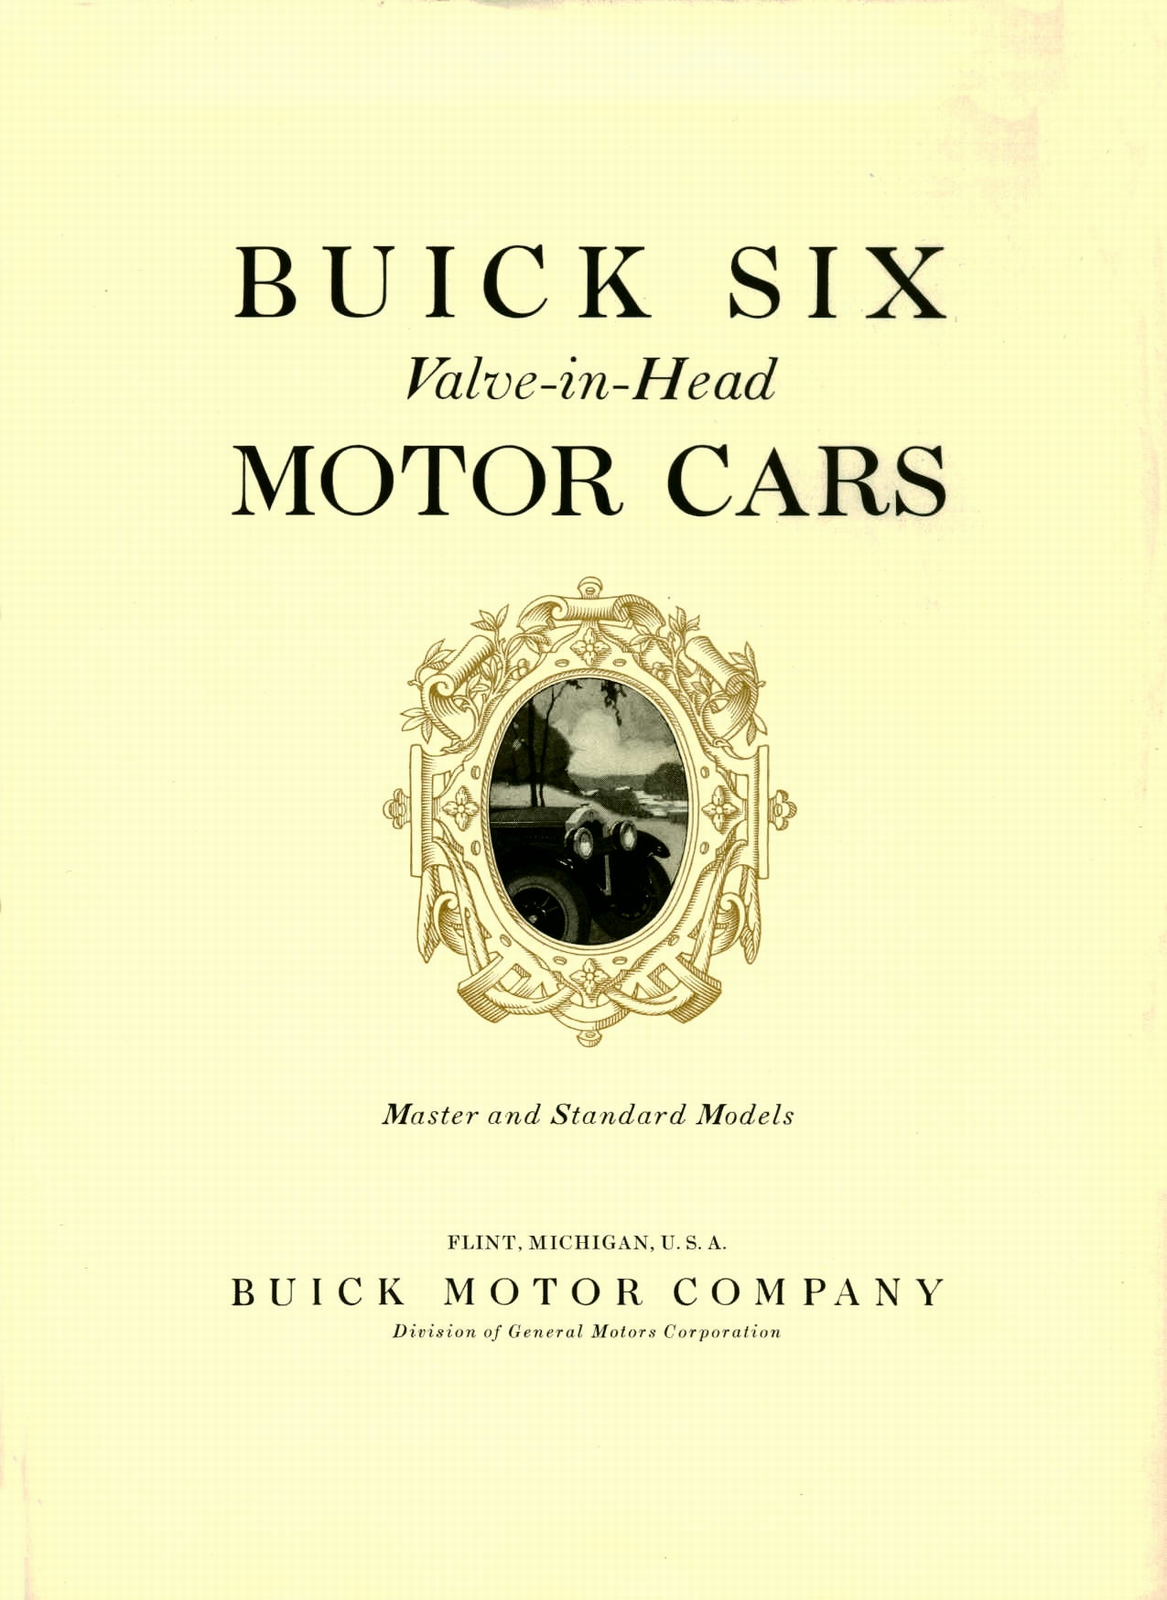 n_1926 Buick Brochure-03.jpg